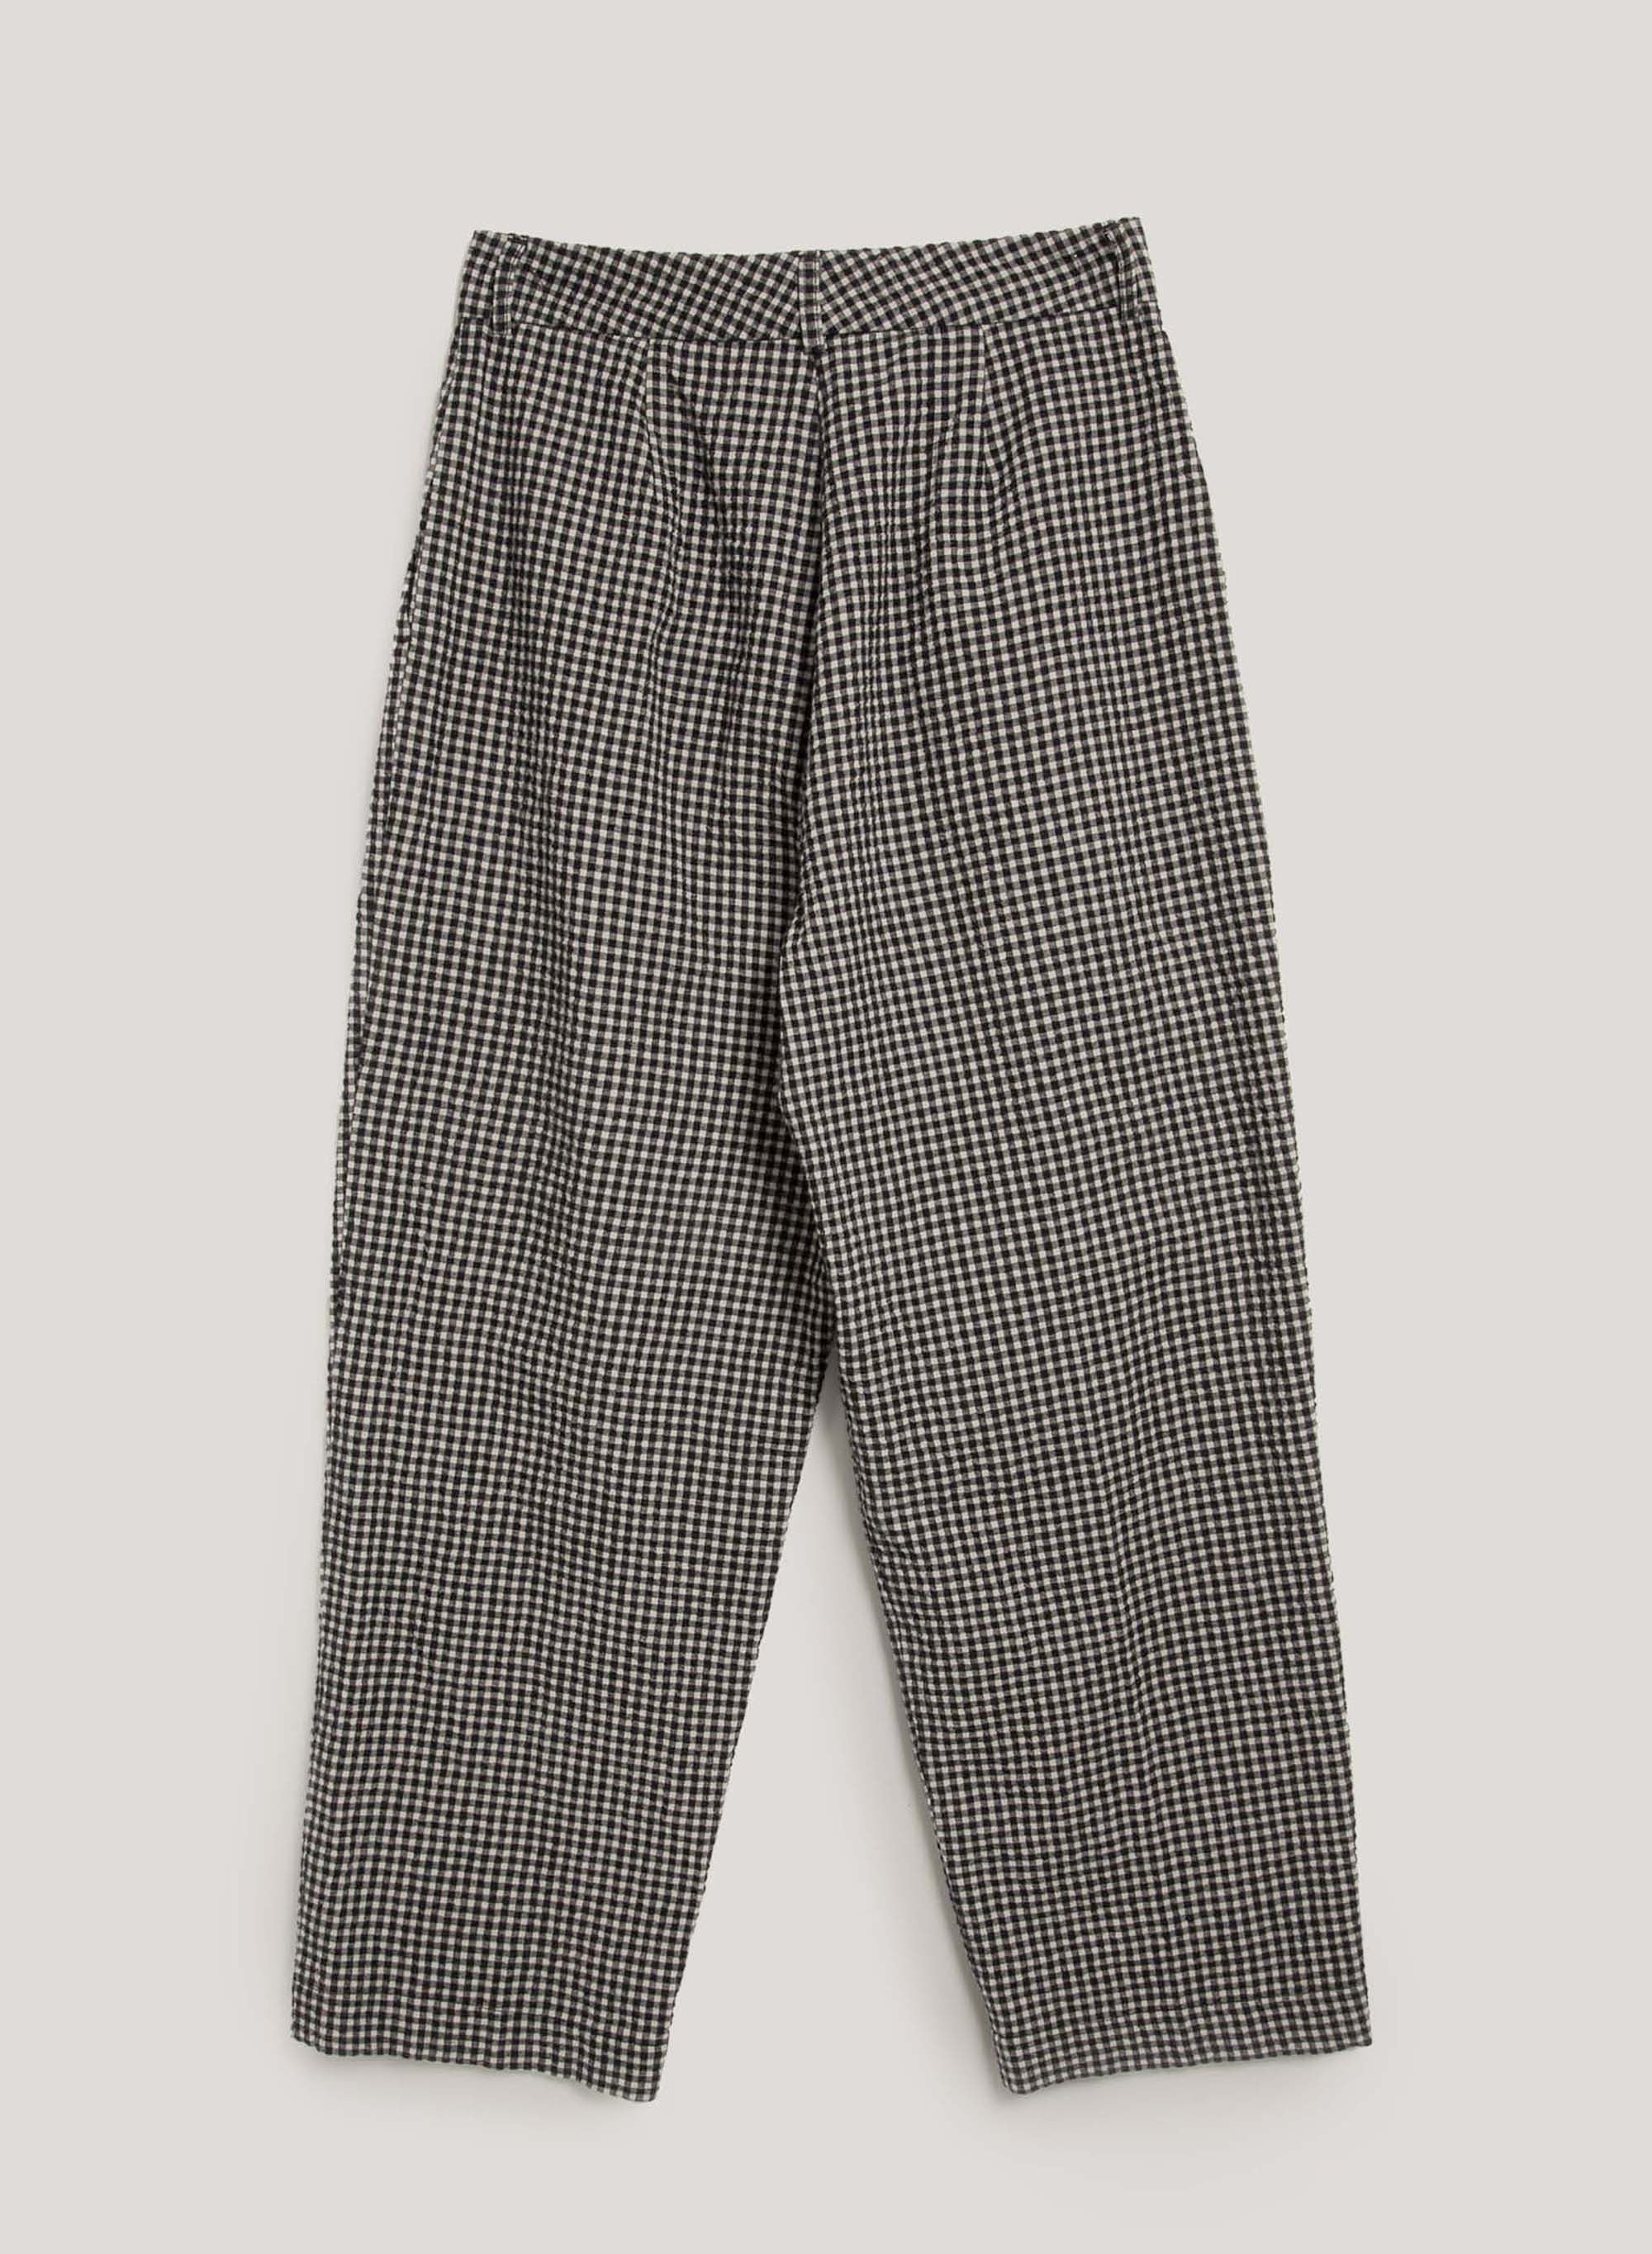 YMC Market Trouser Check Black/Grey